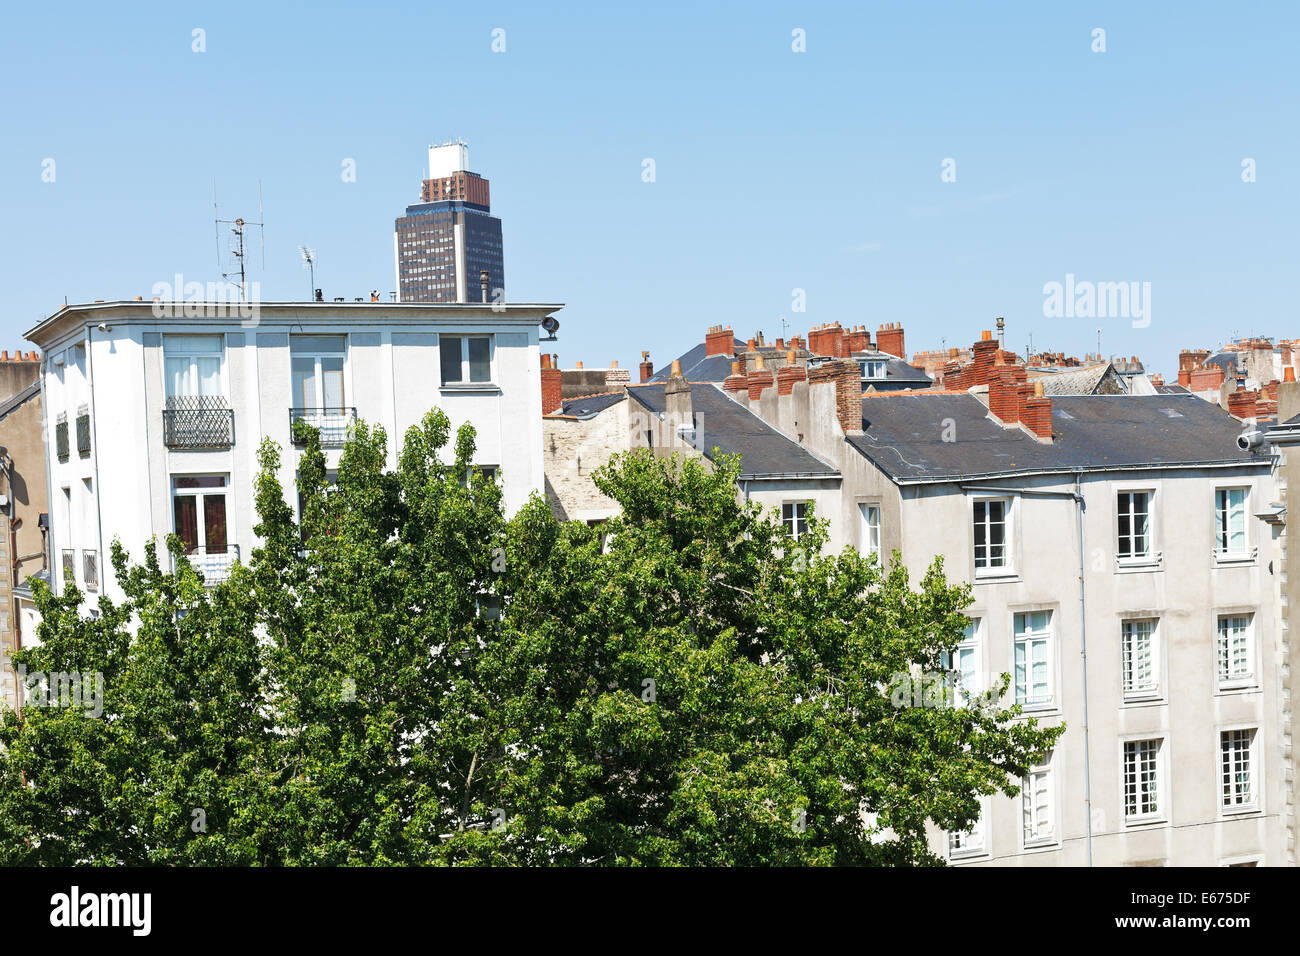 Avis de maisons urbaines et Tour Bretagne (Bretagne Tower) à Nantes, France Banque D'Images